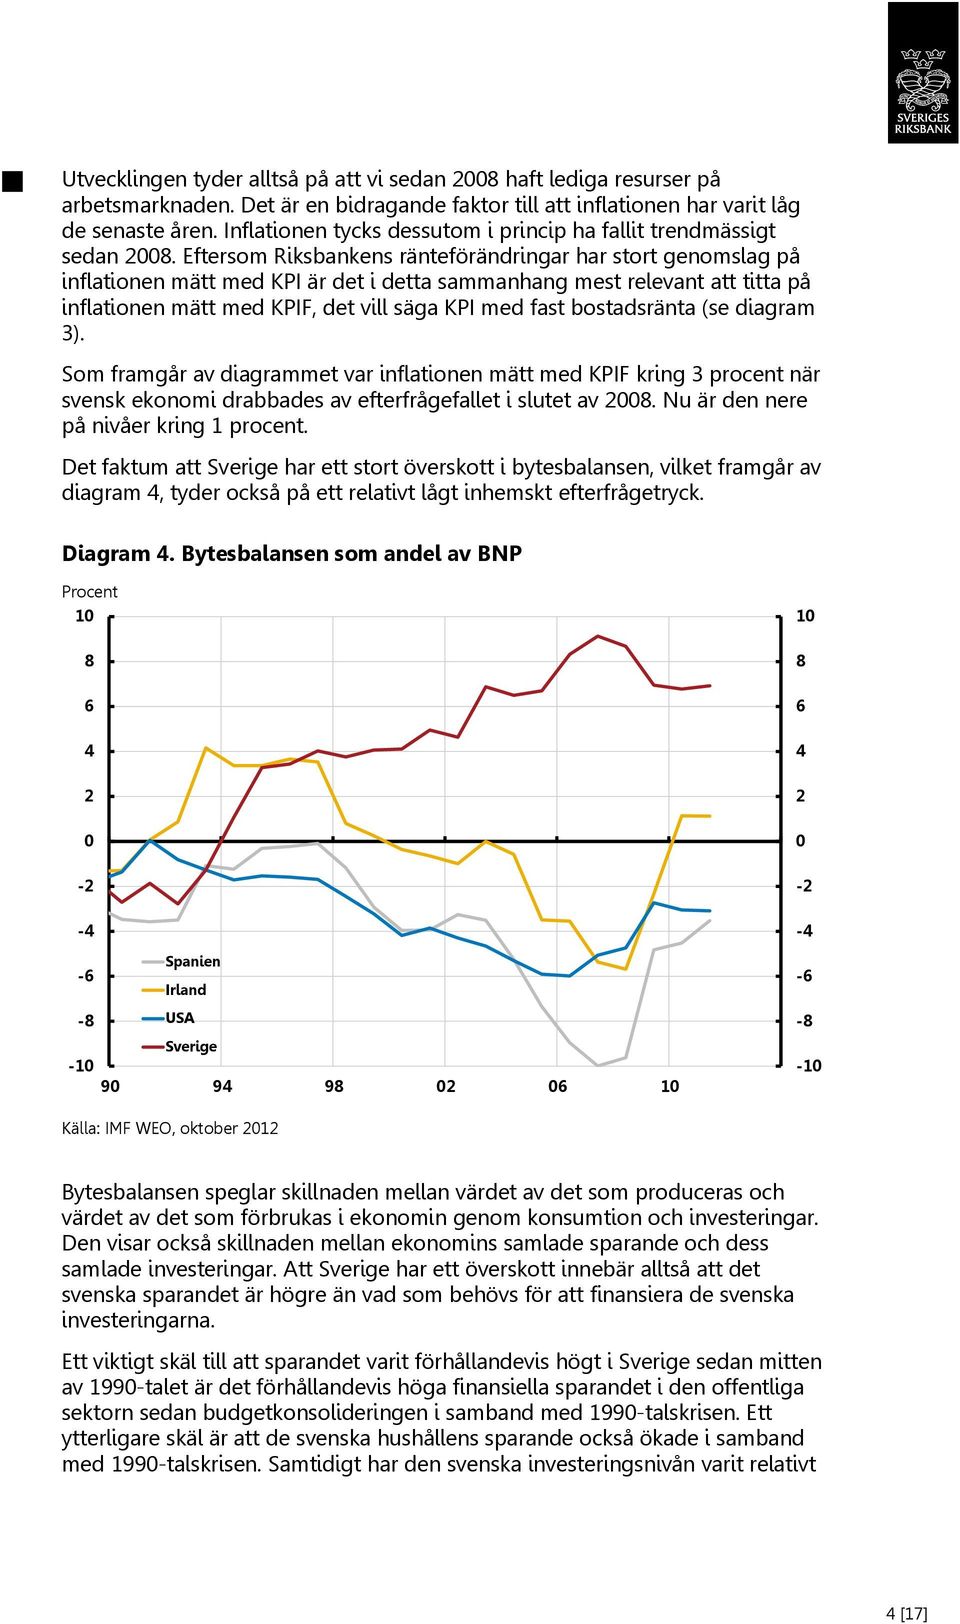 Eftersom Riksbankens ränteförändringar har stort genomslag på inflationen mätt med KPI är det i detta sammanhang mest relevant att titta på inflationen mätt med KPIF, det vill säga KPI med fast